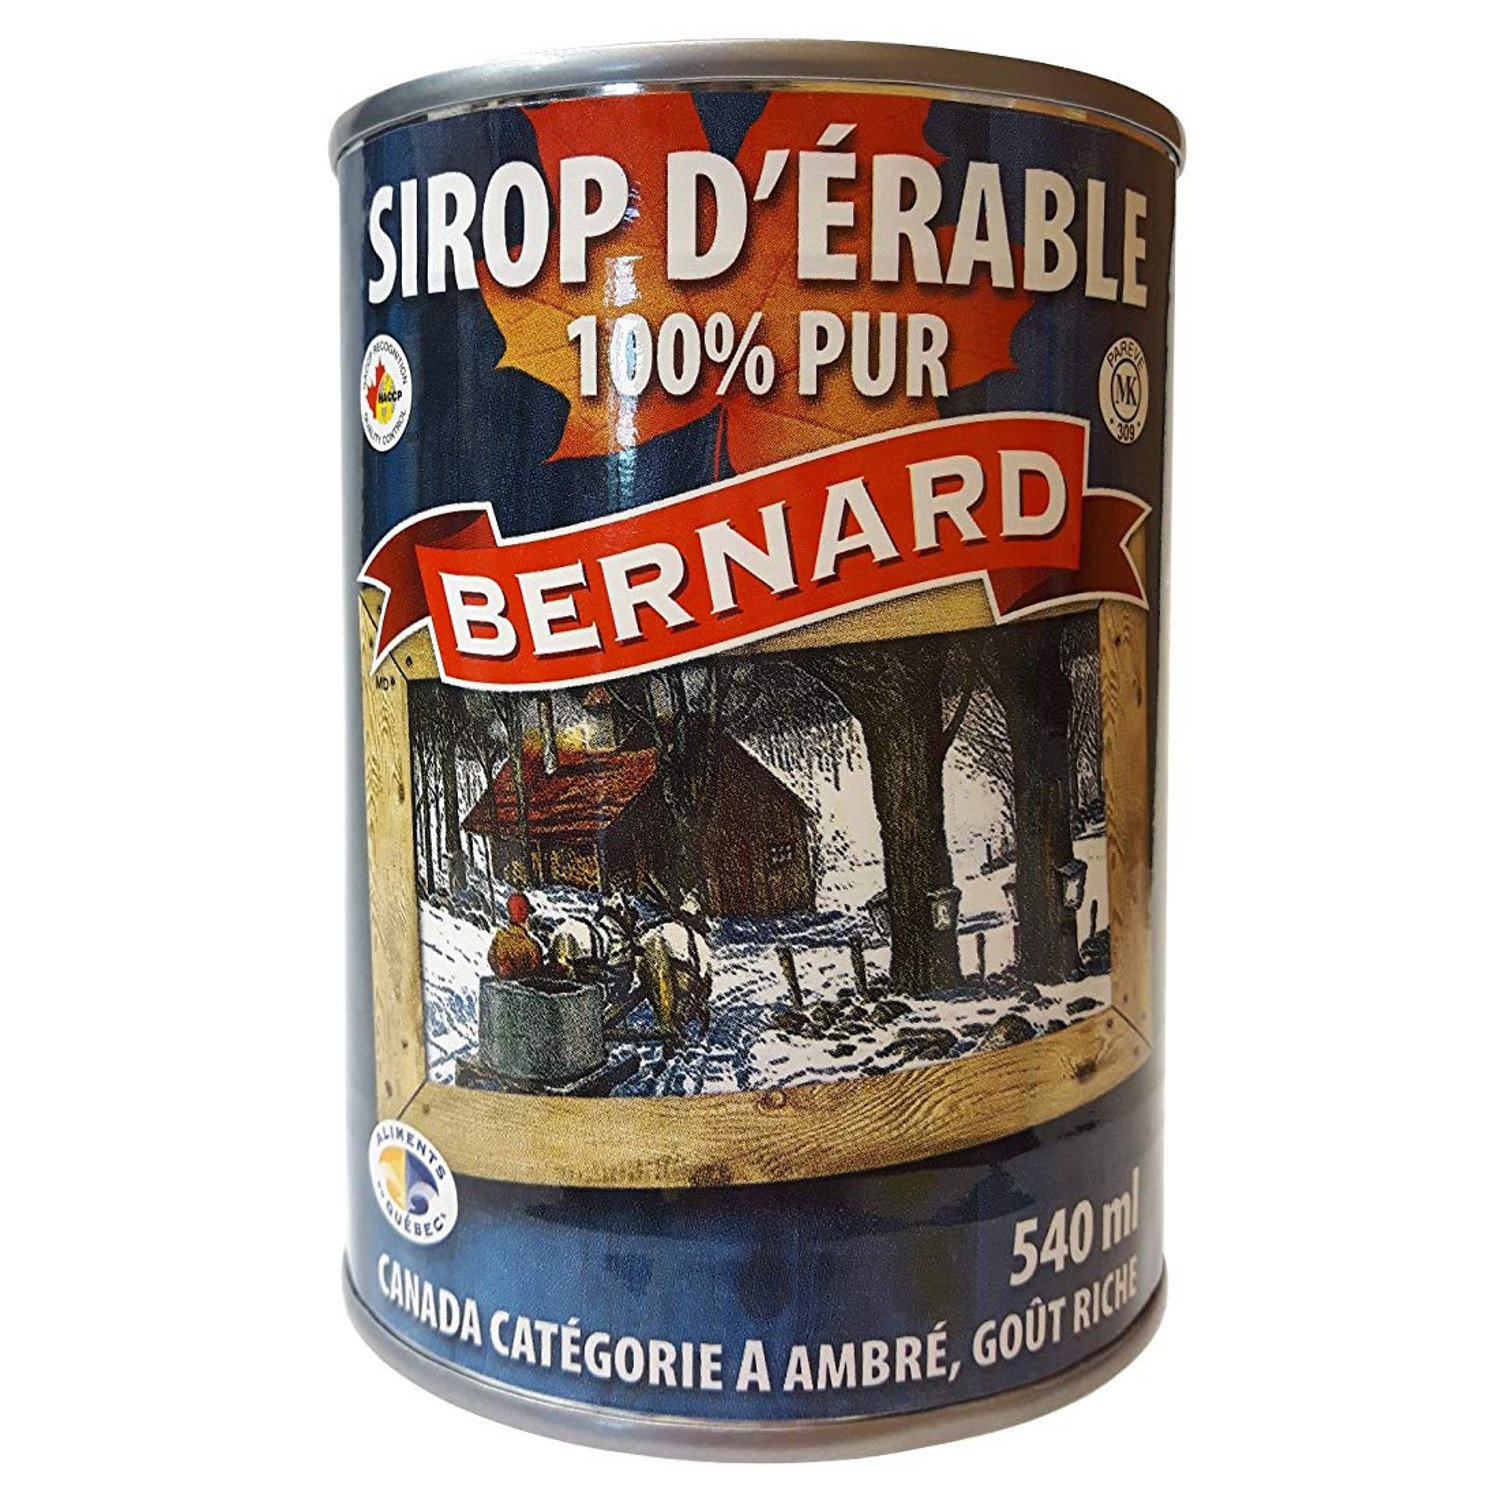 Sirop d'érable 100% pur Bernard (24x540ml)